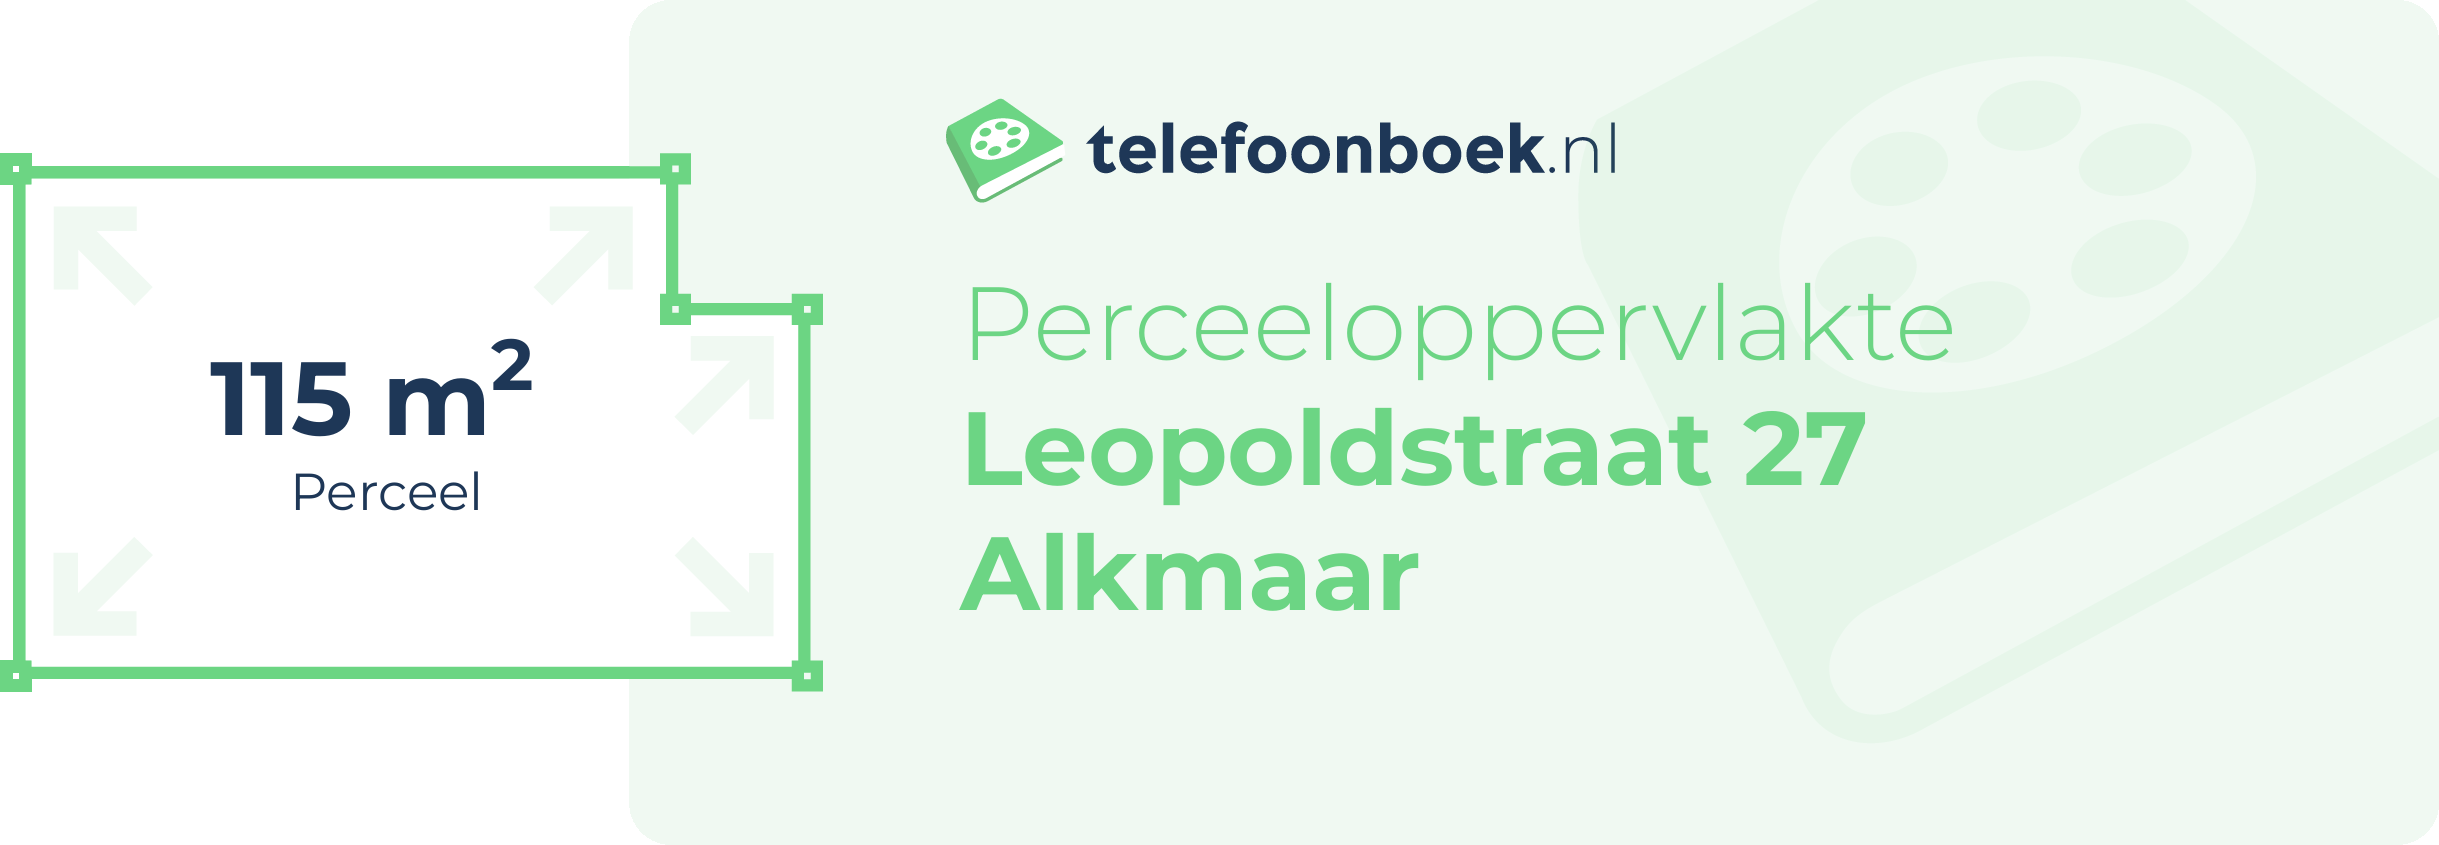 Perceeloppervlakte Leopoldstraat 27 Alkmaar